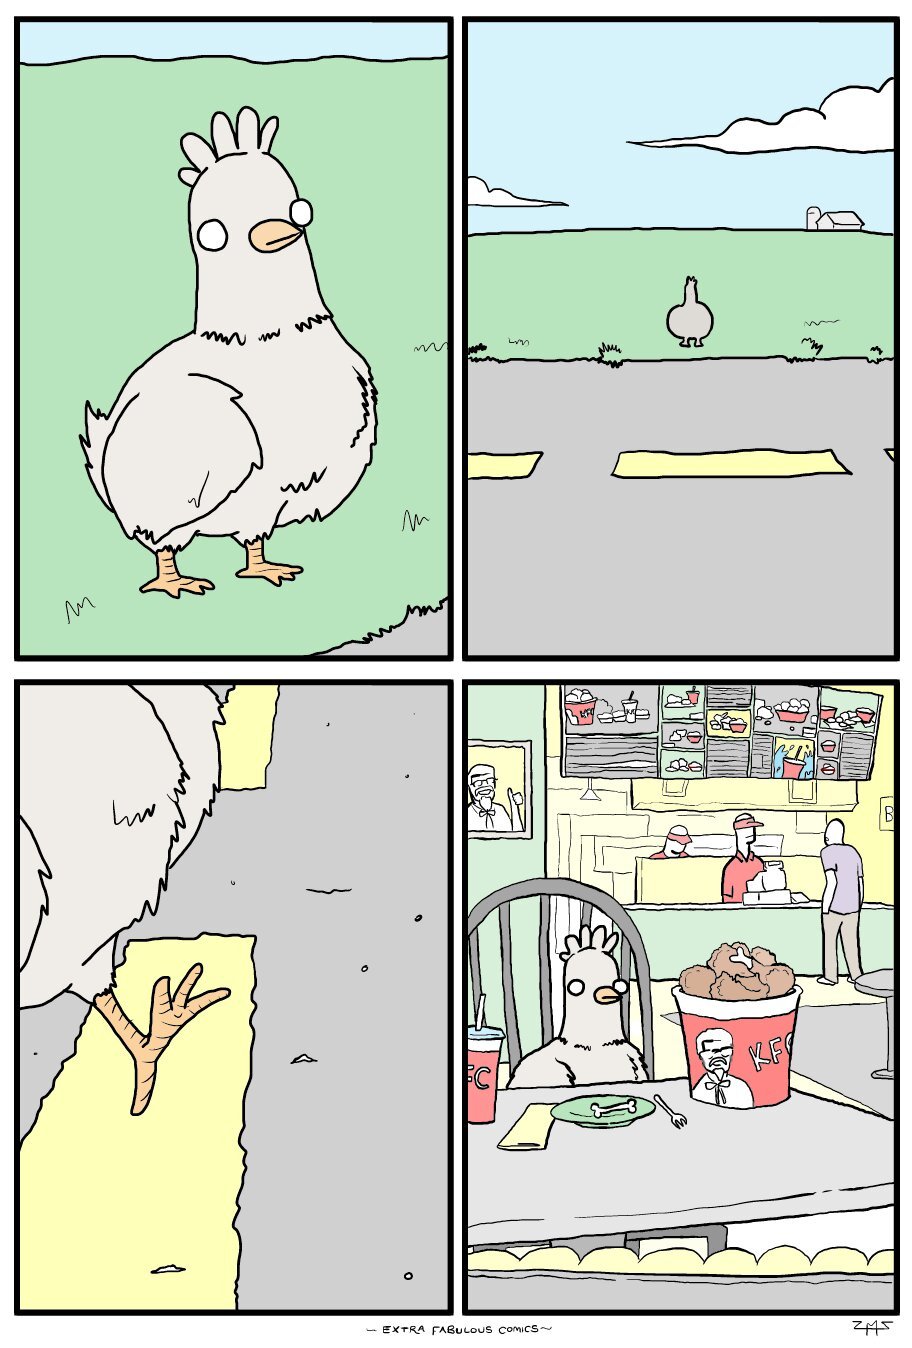 La verdadera razón por la cual la gallina cruzó la calle - meme